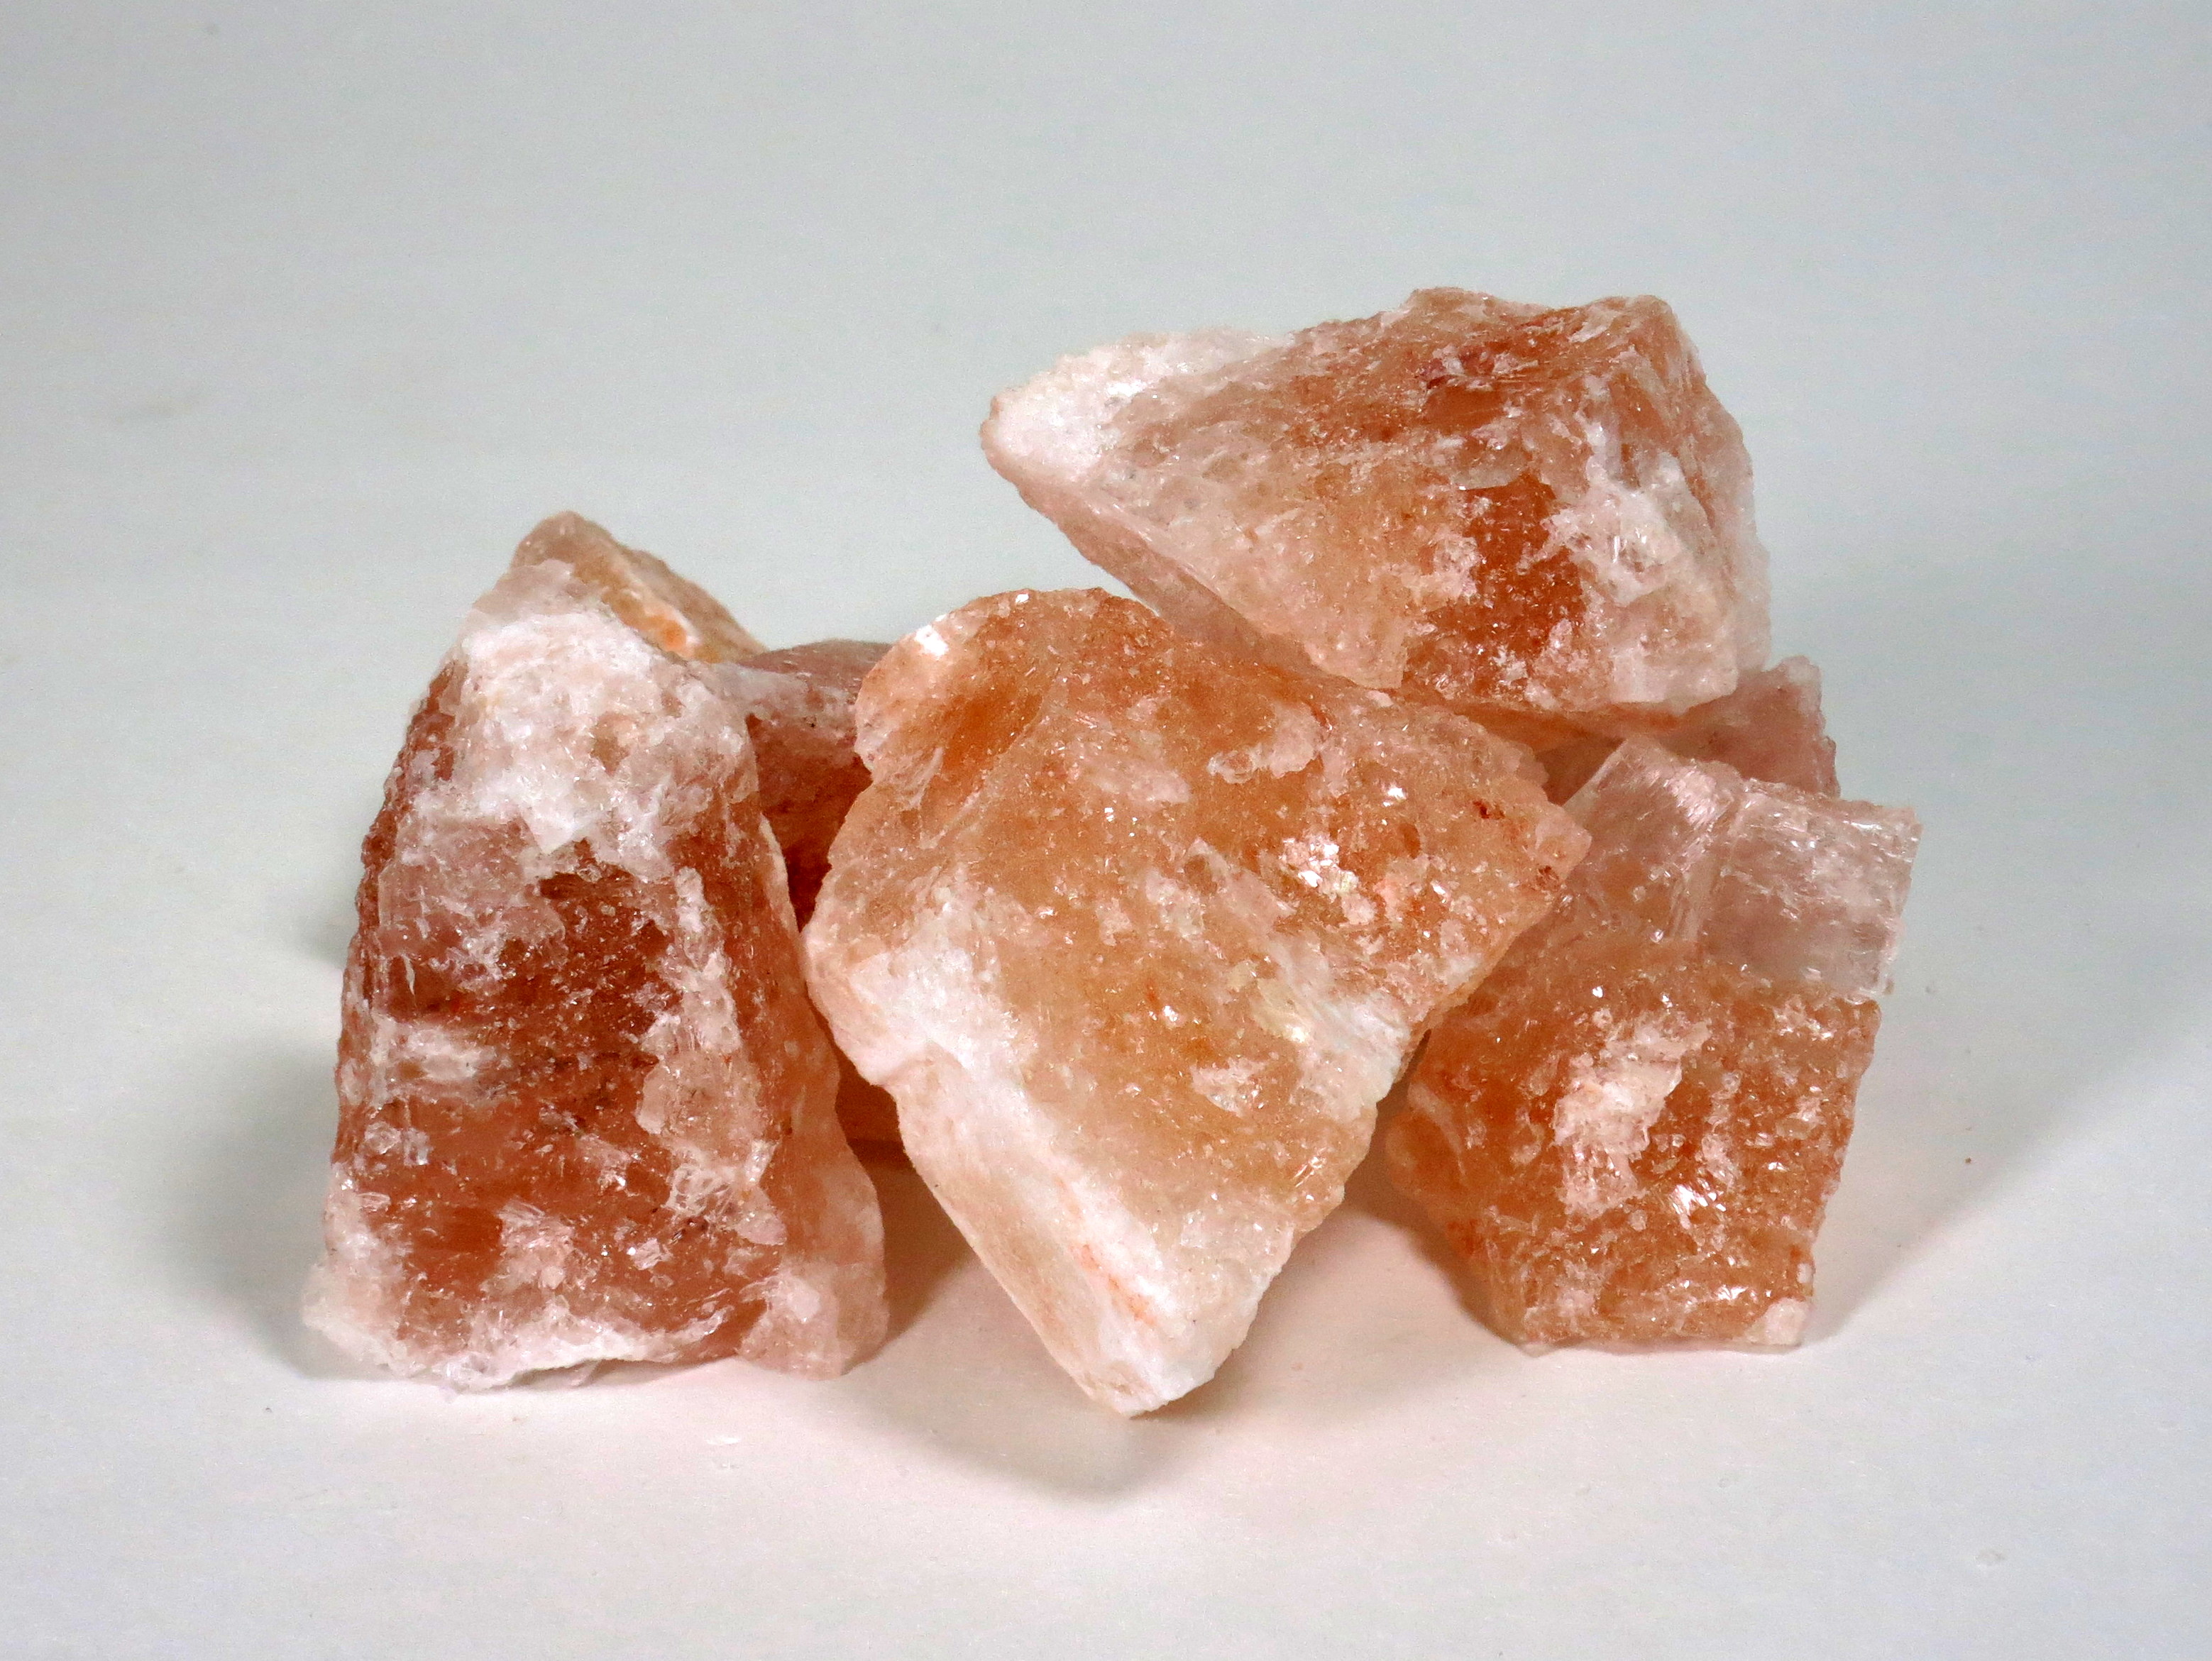 Купить соли кристаллы москва город без наркотик 2015 смотреть онлайн hd